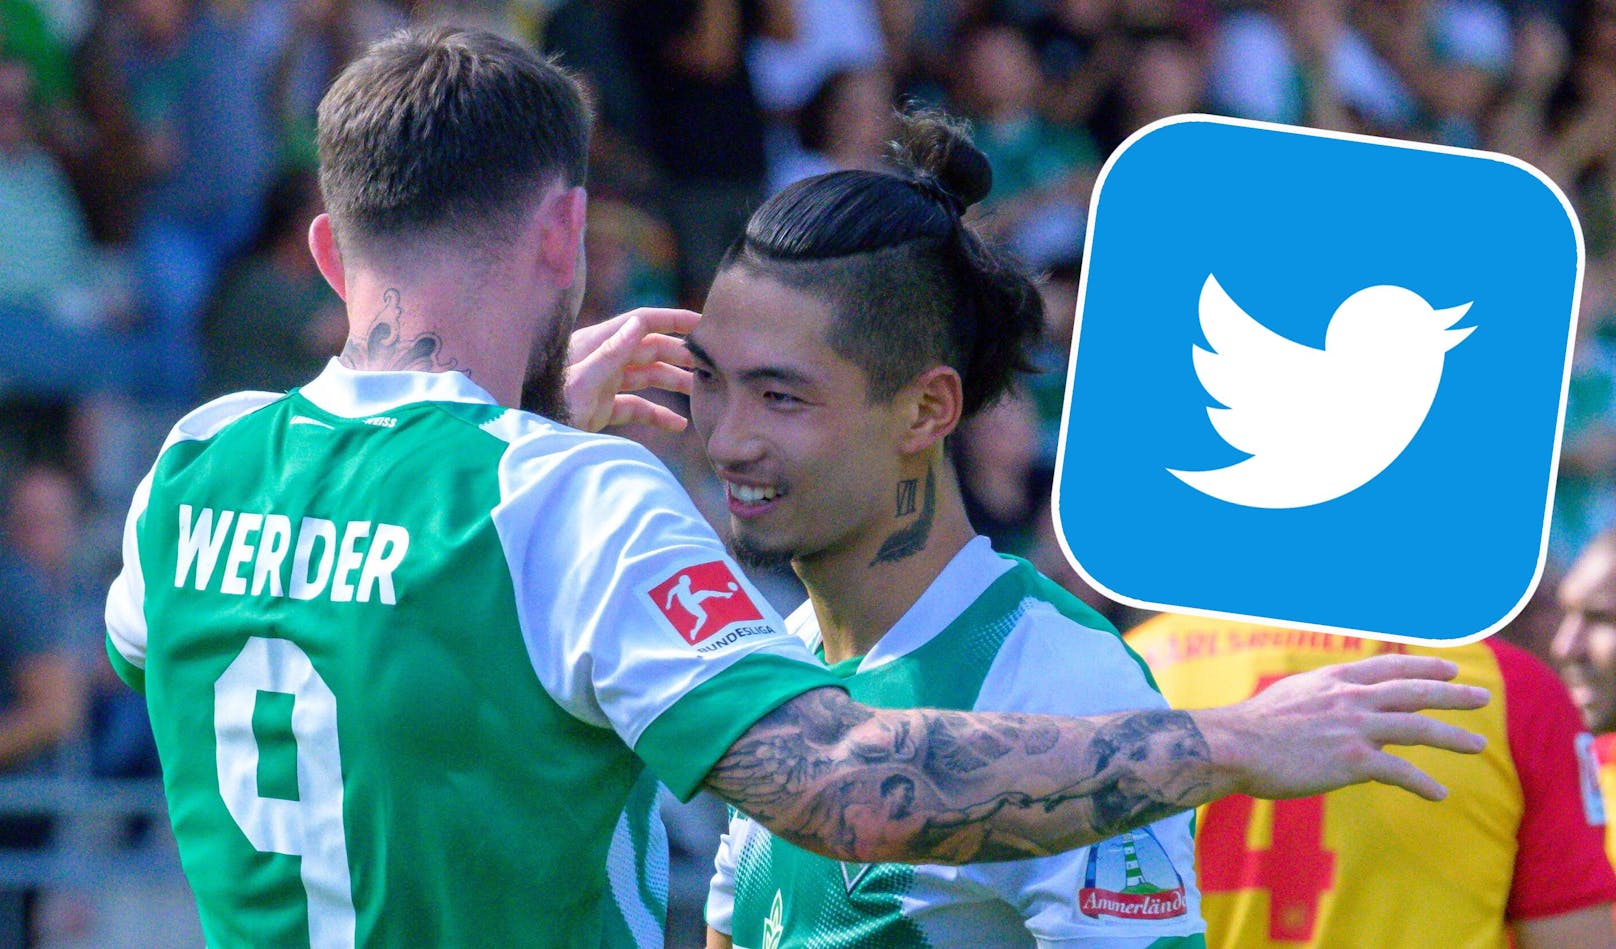 Die FPÖ ist empört über einen Tweet von Werder Bremen.